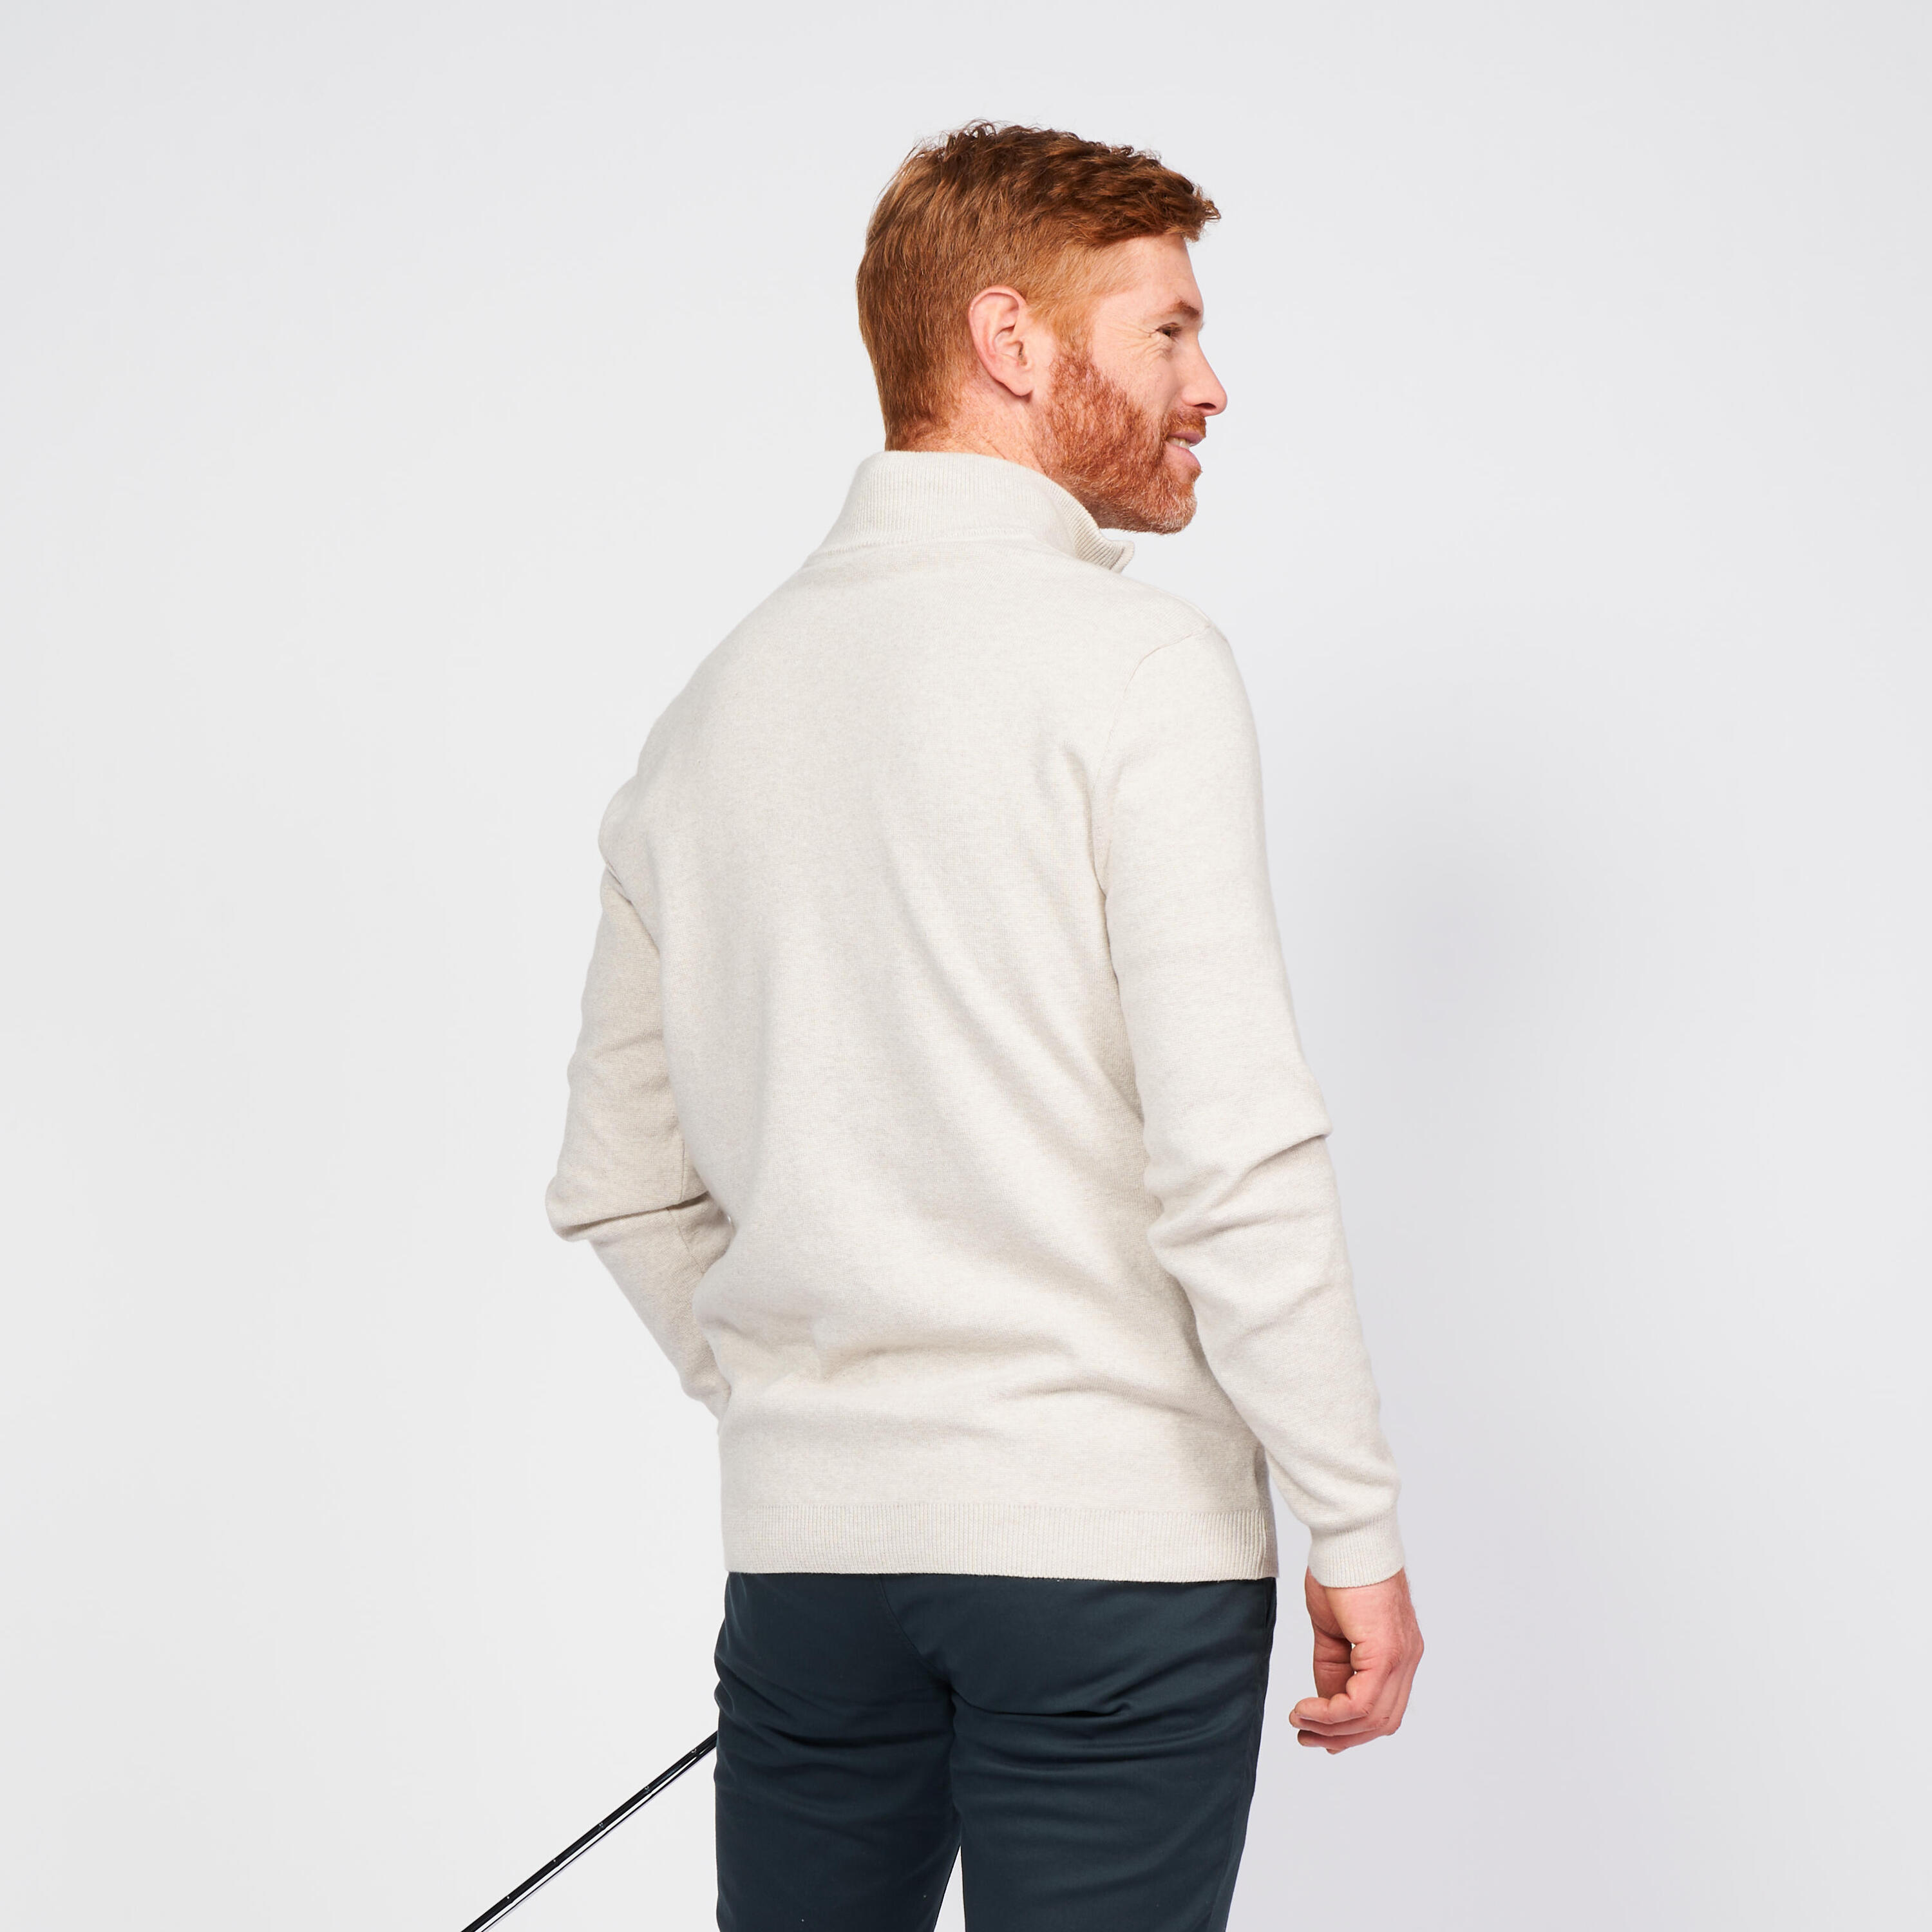 Men's golf half-zipped pullover - mw500 ecru 2/5